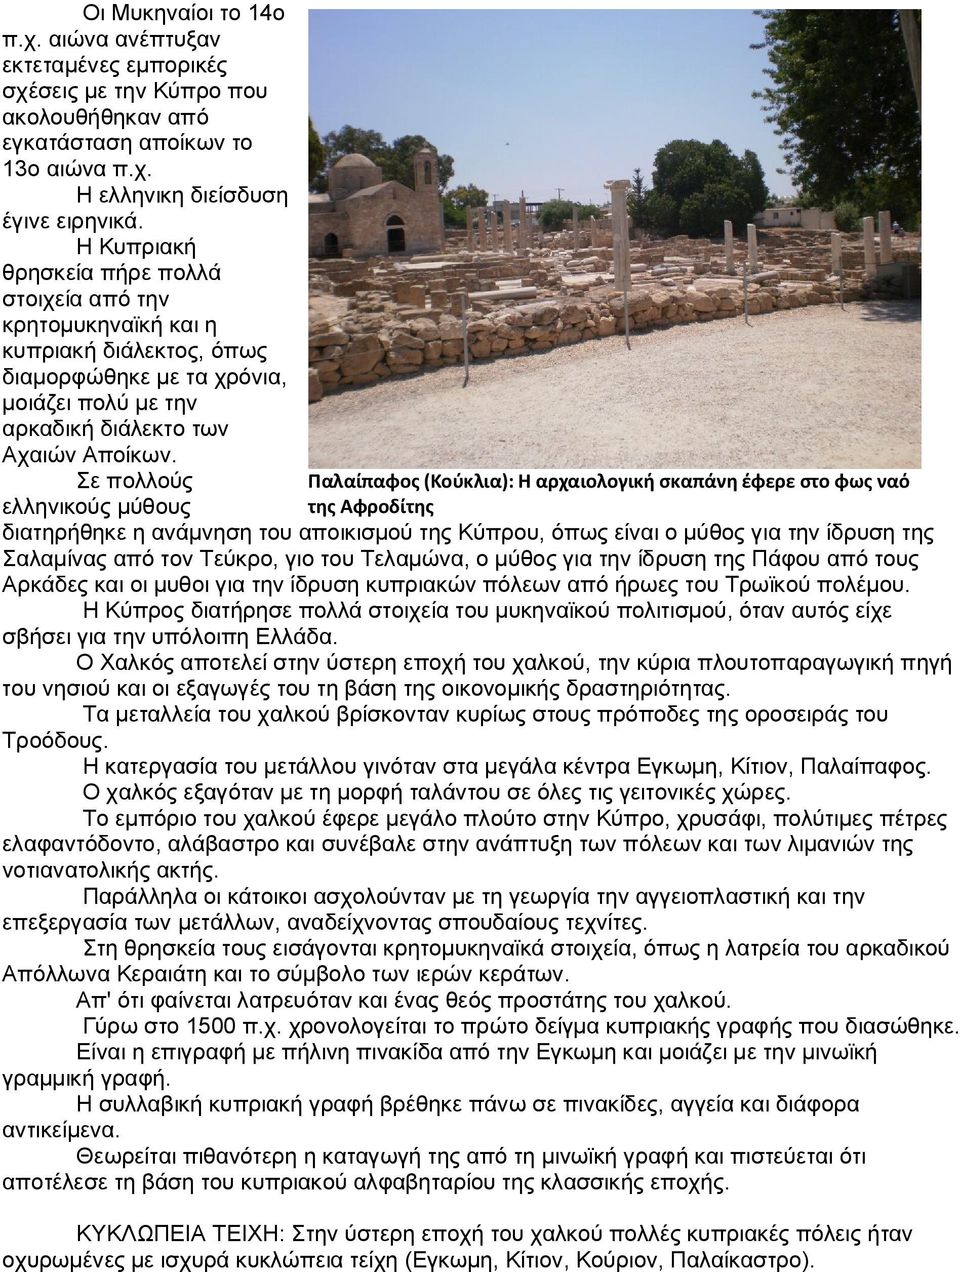 Σε πολλούς Παλαίπαφος (Κούκλια): Η αρχαιολογική σκαπάνη έφερε στο φως ναό ελληνικούς μύθους της Αφροδίτης διατηρήθηκε η ανάμνηση του αποικισμού της Κύπρου, όπως είναι ο μύθος για την ίδρυση της